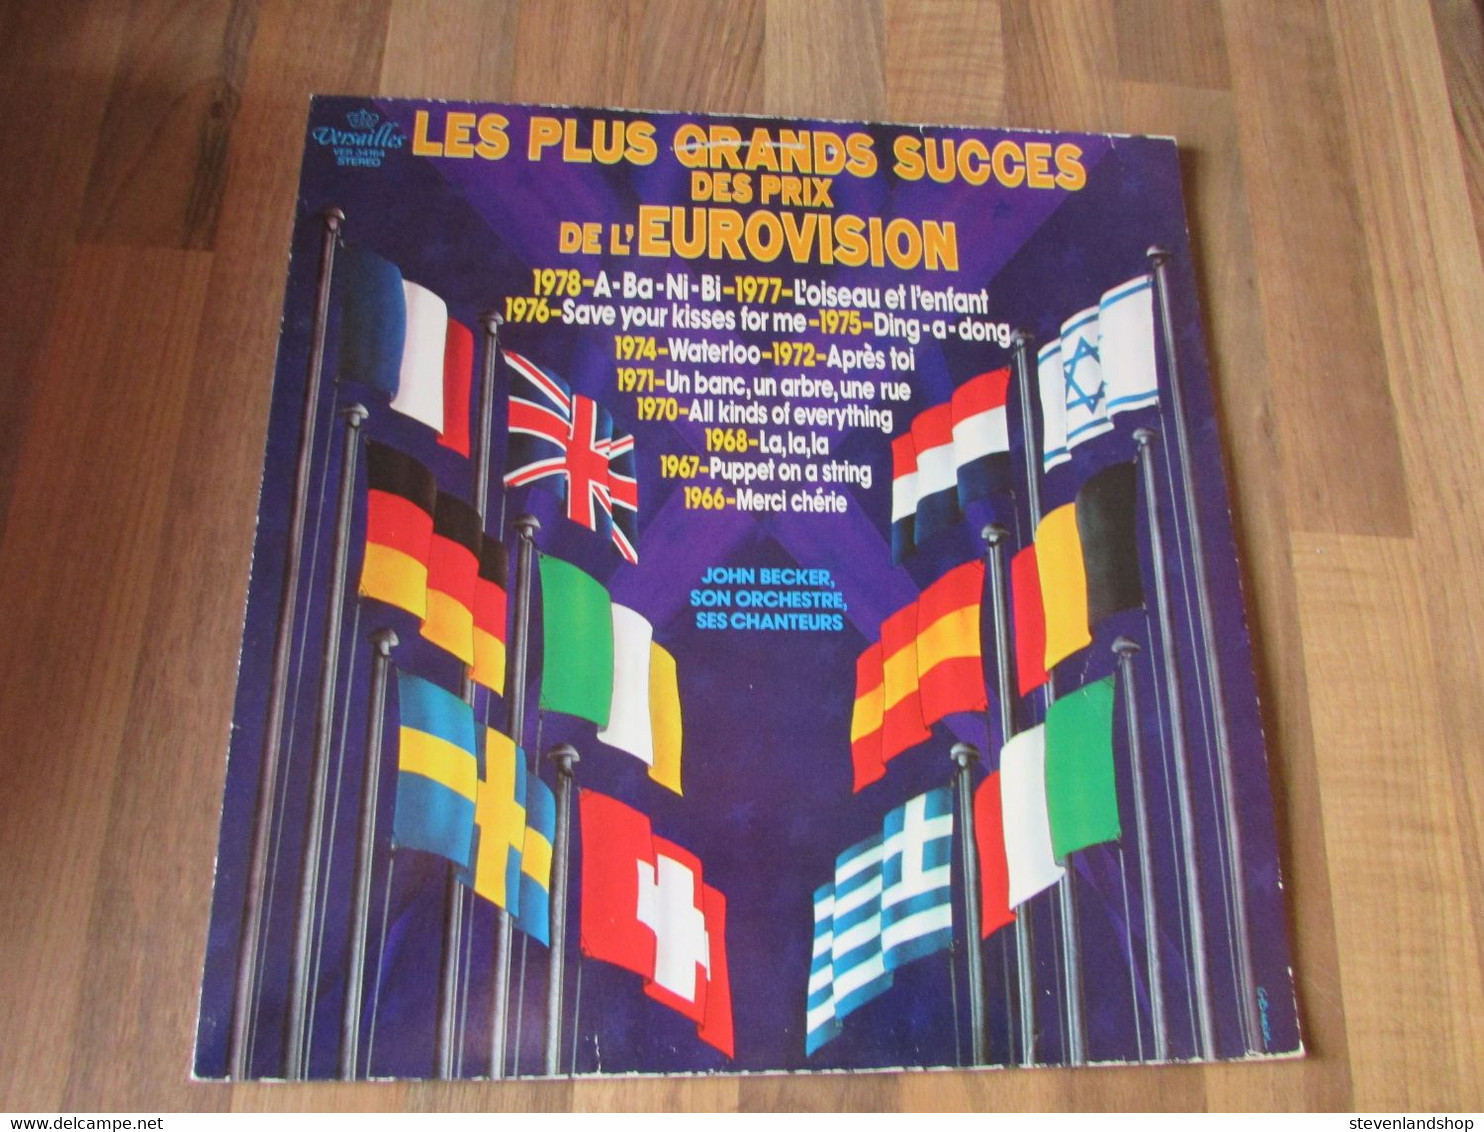 Les Plus Grands Succes Des Prix De L'Eurovision - Collectors